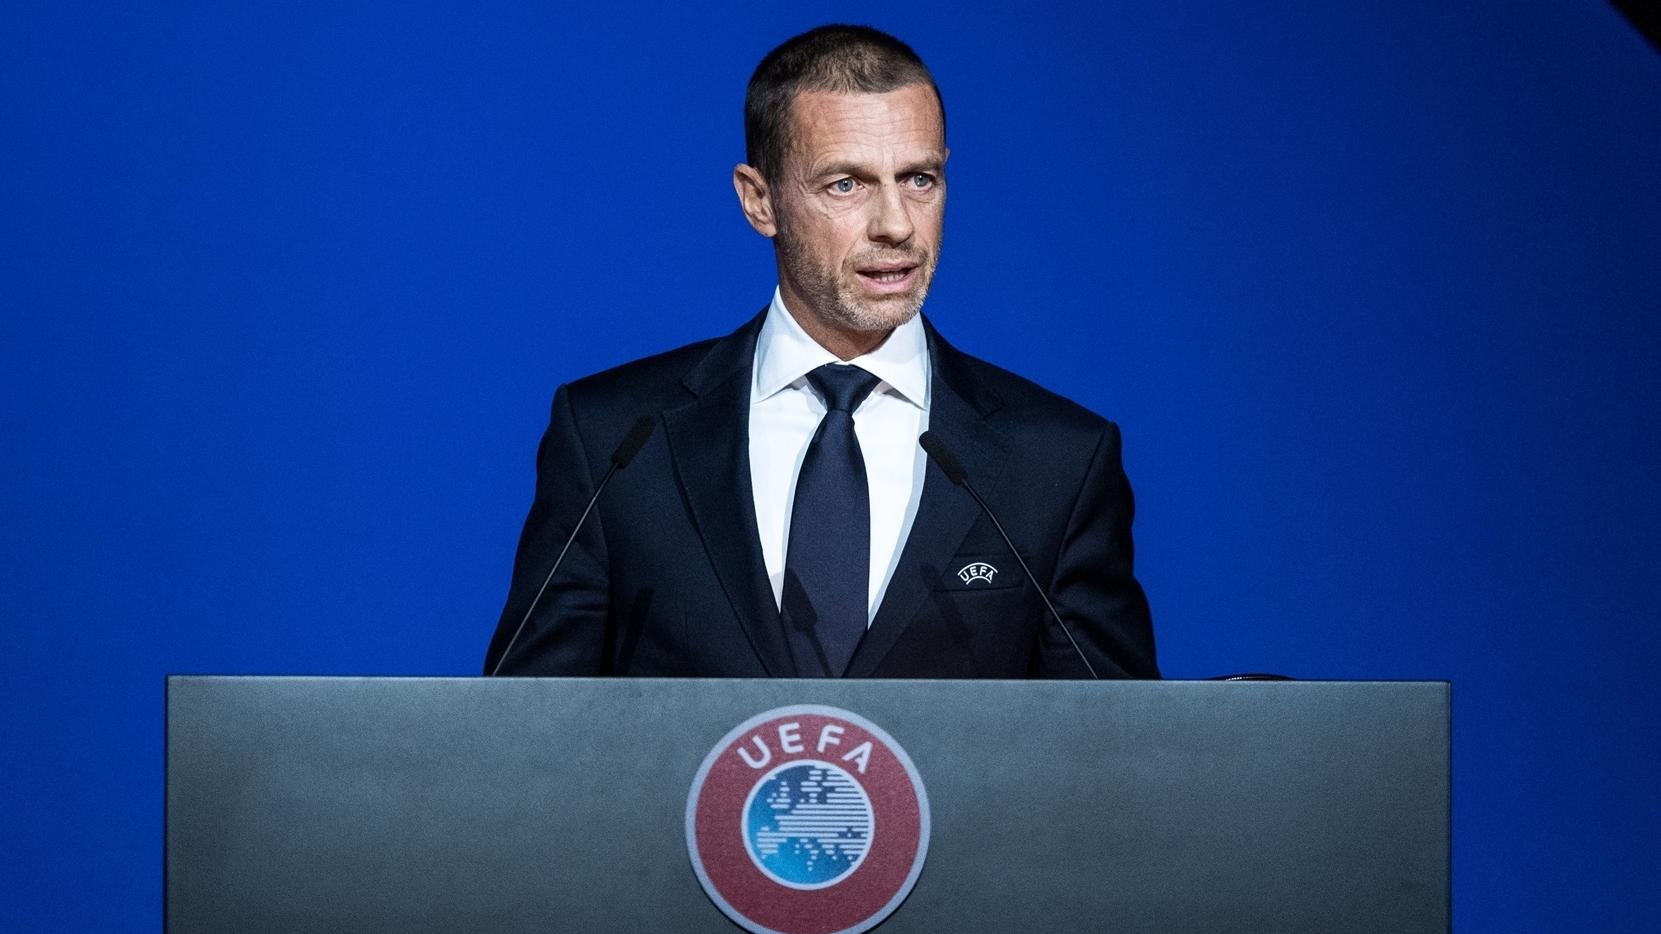 Le président de l'UEFA, Aleksander Čeferin, déclare : « Poursuivre un but  plutôt que le profit. C'est la clé. » | Dans les coulisses de l'UEFA | UEFA .com